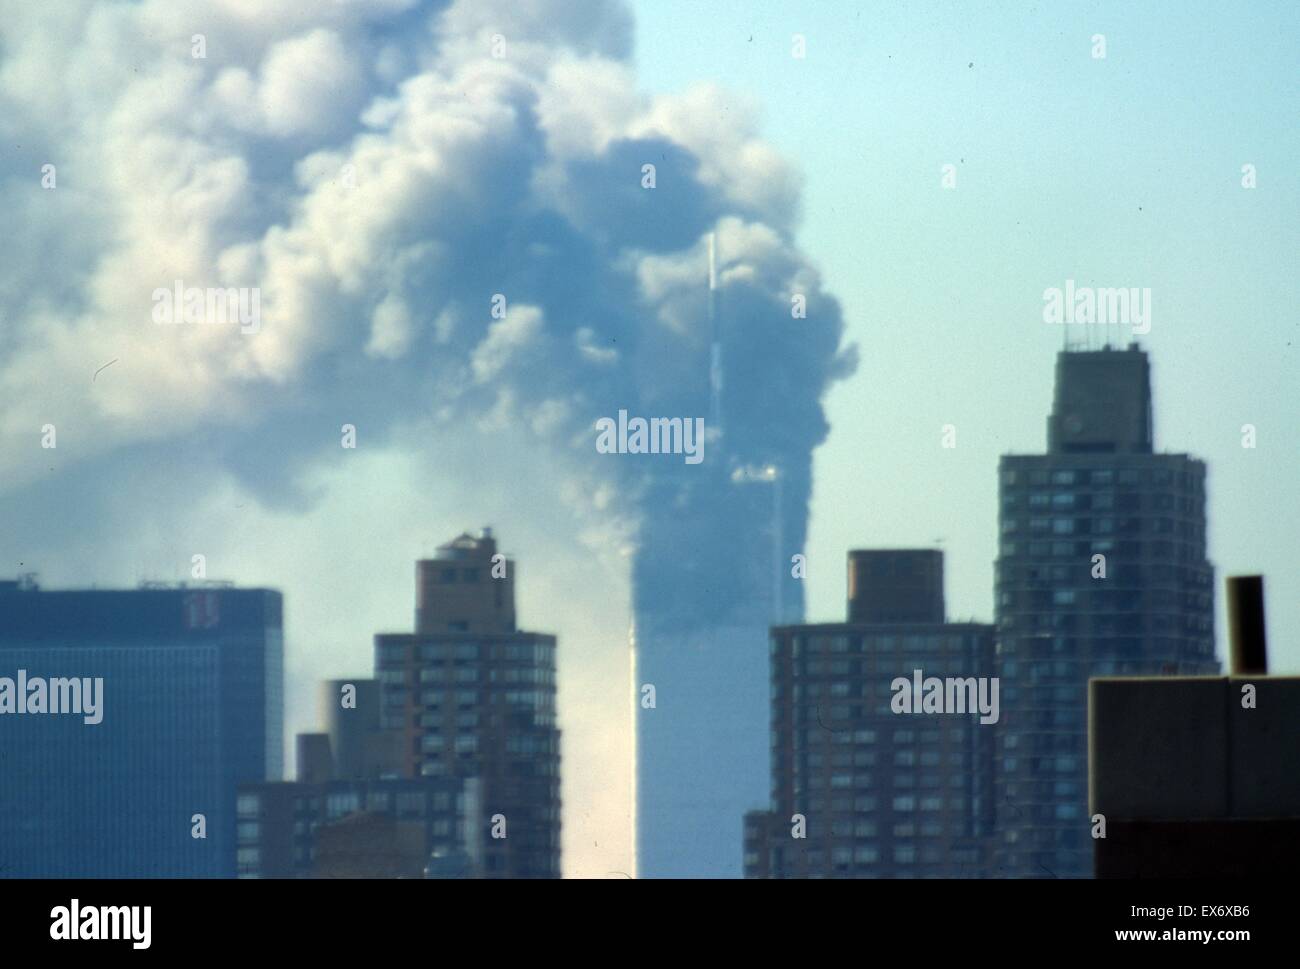 Le 11 septembre (9/11) ou groupe terroriste islamique al-Qaïda attentats à New York, le 11 septembre 2001. Deux des avions, ont été écrasés dans les tours nord et sud, du World Trade Centre à New York. Dans les deux heures, les deux 110 étages Banque D'Images